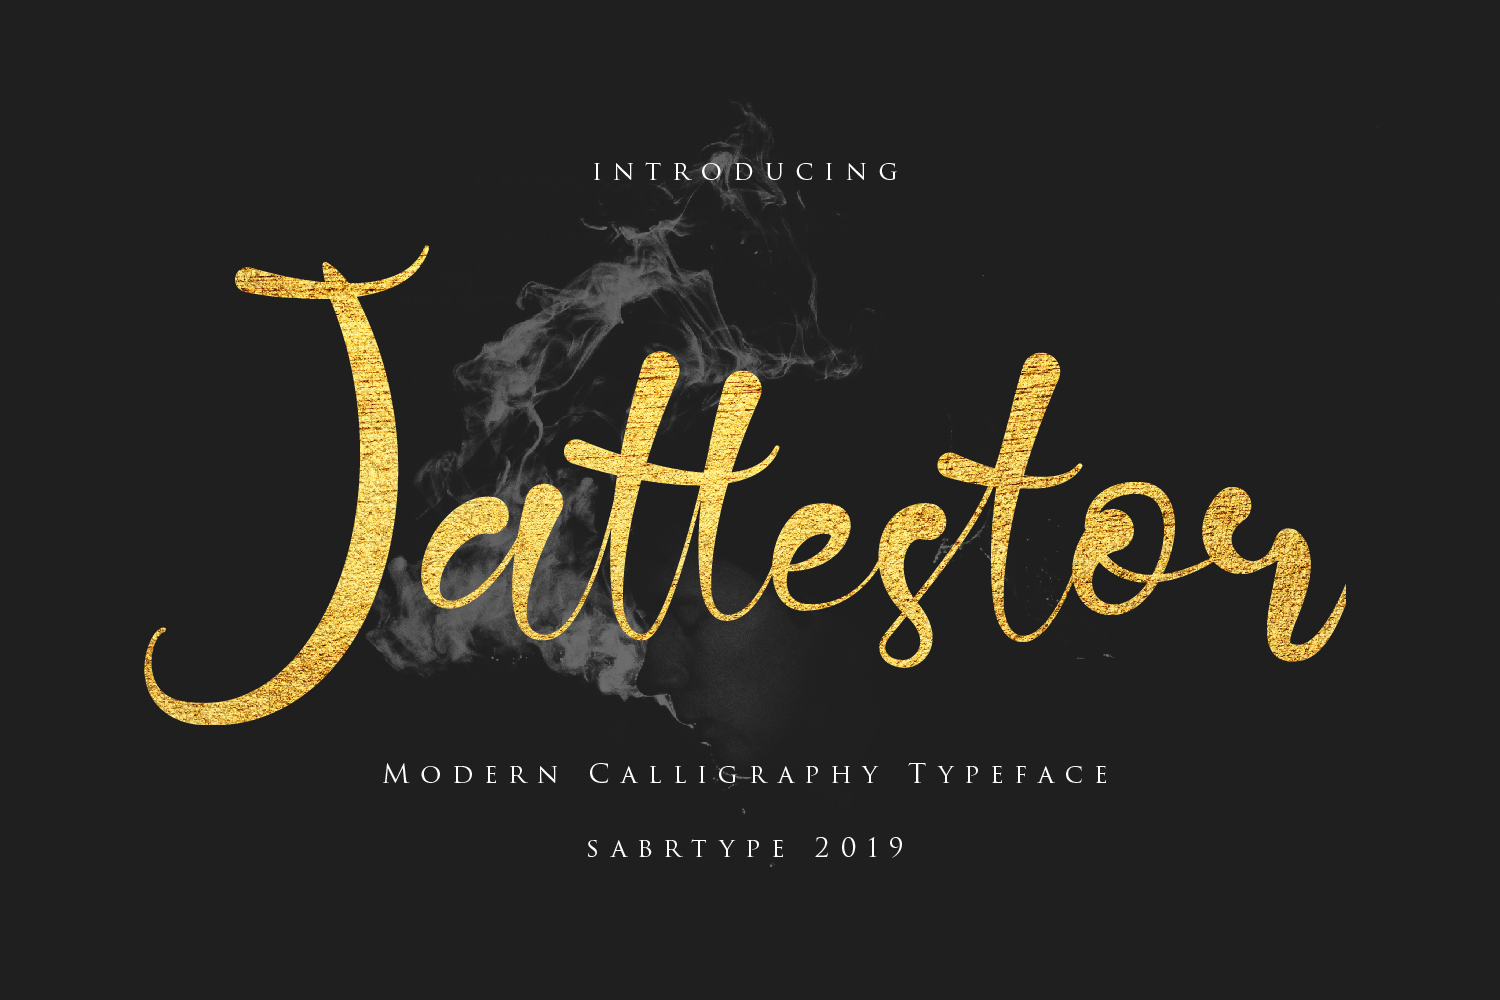 Free Demo Jattestor Modern Calligraphy Font